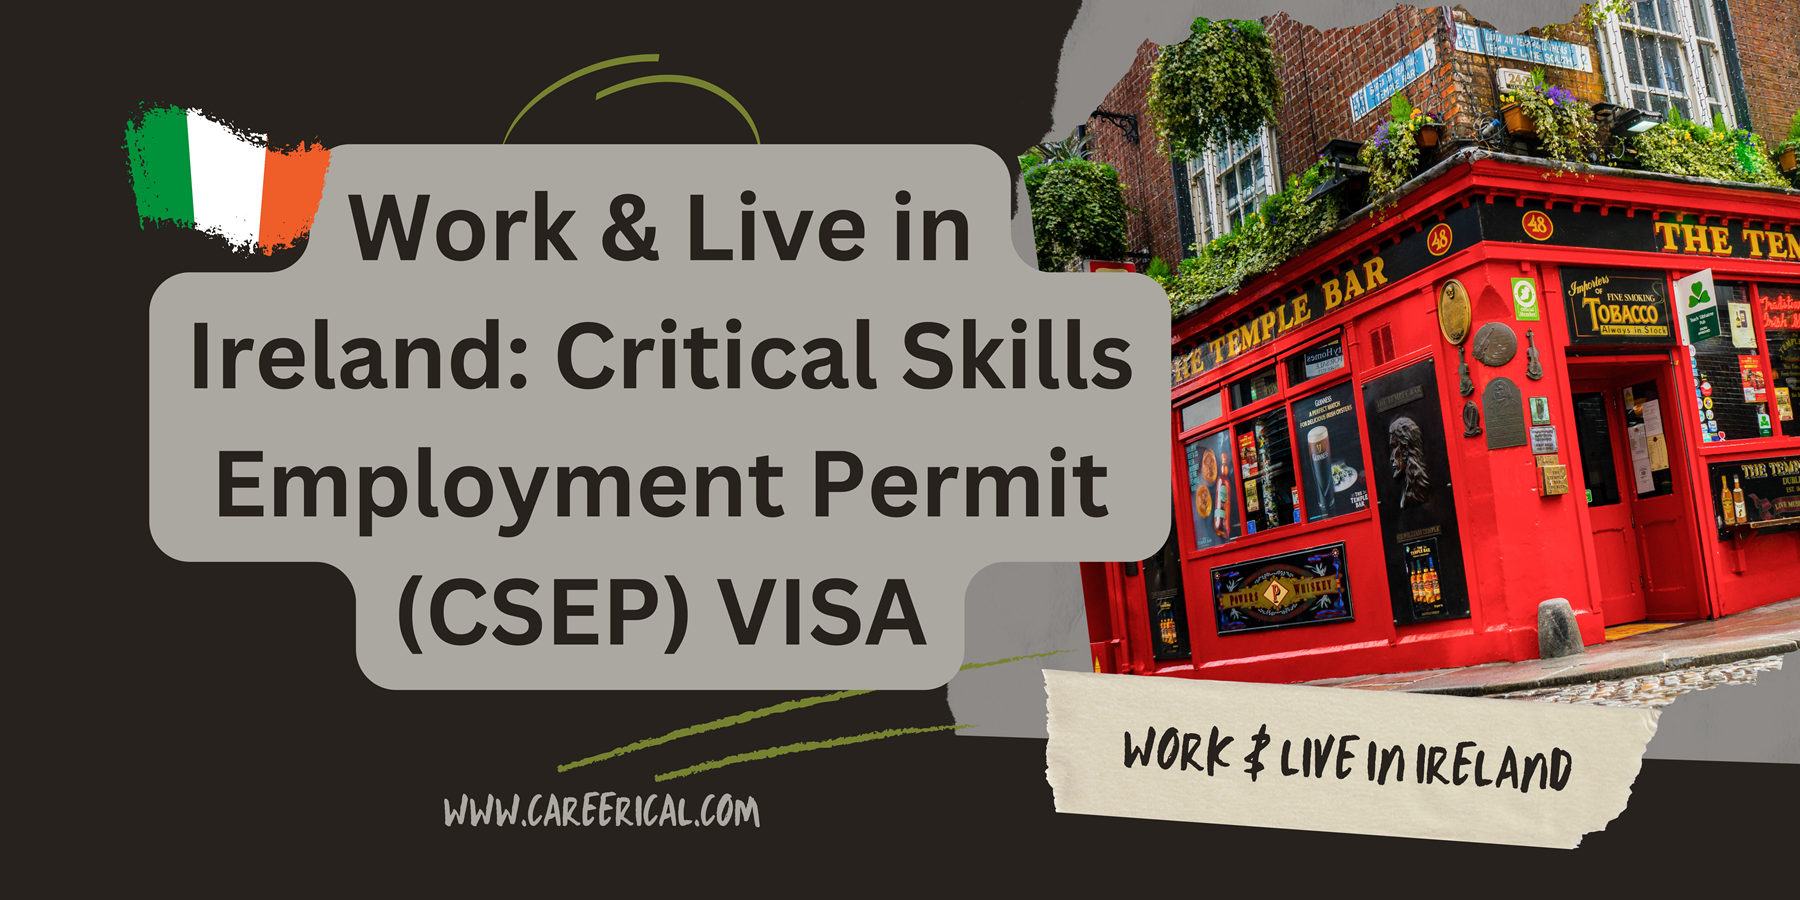 Work & Live in Ireland Critical Skills Employment Permit (CSEP) VISA